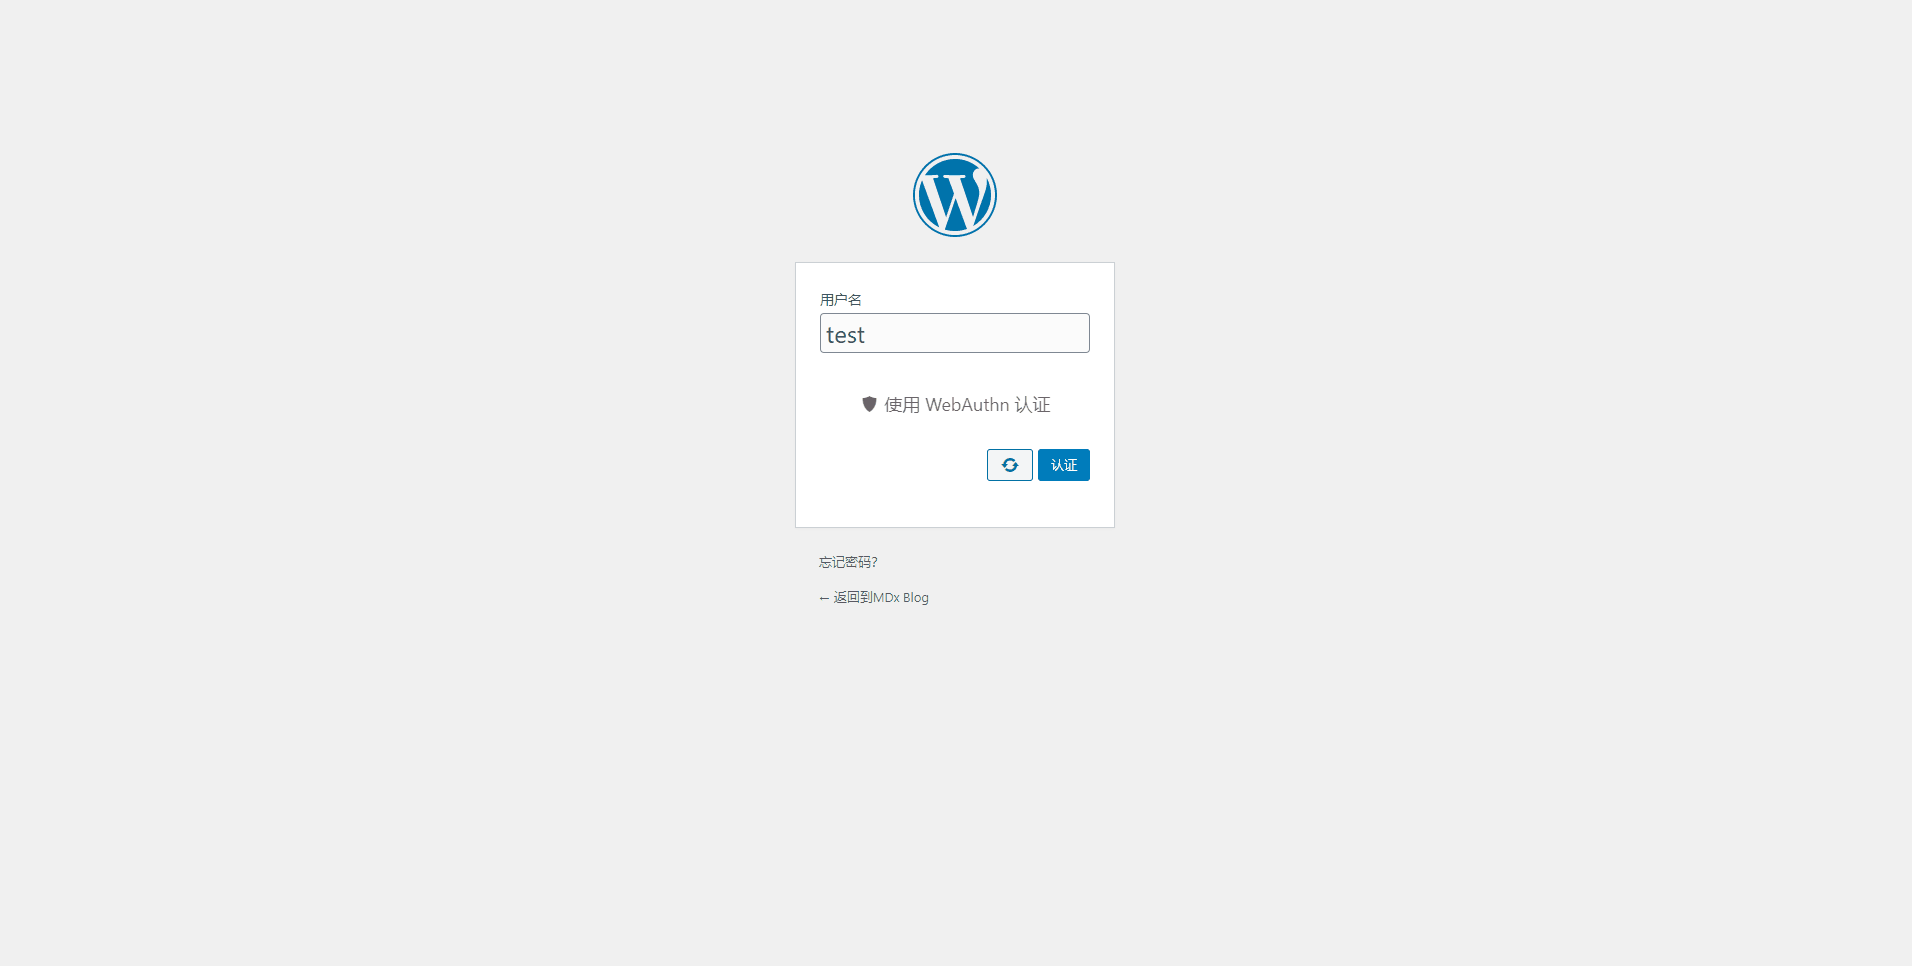 Плагин WordPress WebAuthn очень прост в использовании